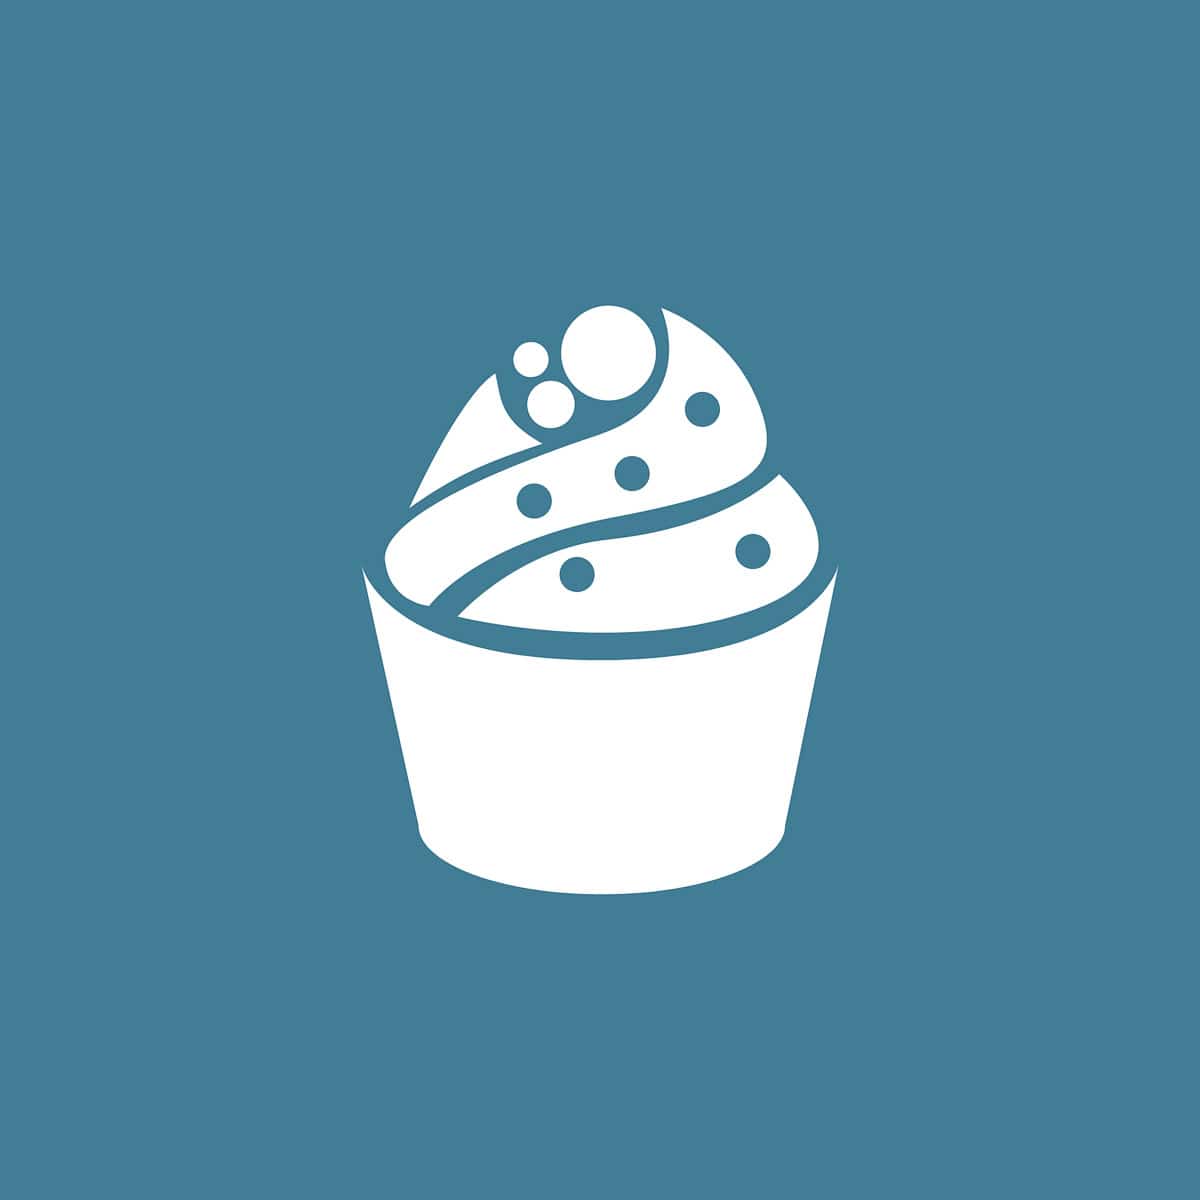 Een tekening van een cupcake met topping op een blauwe ondergrond